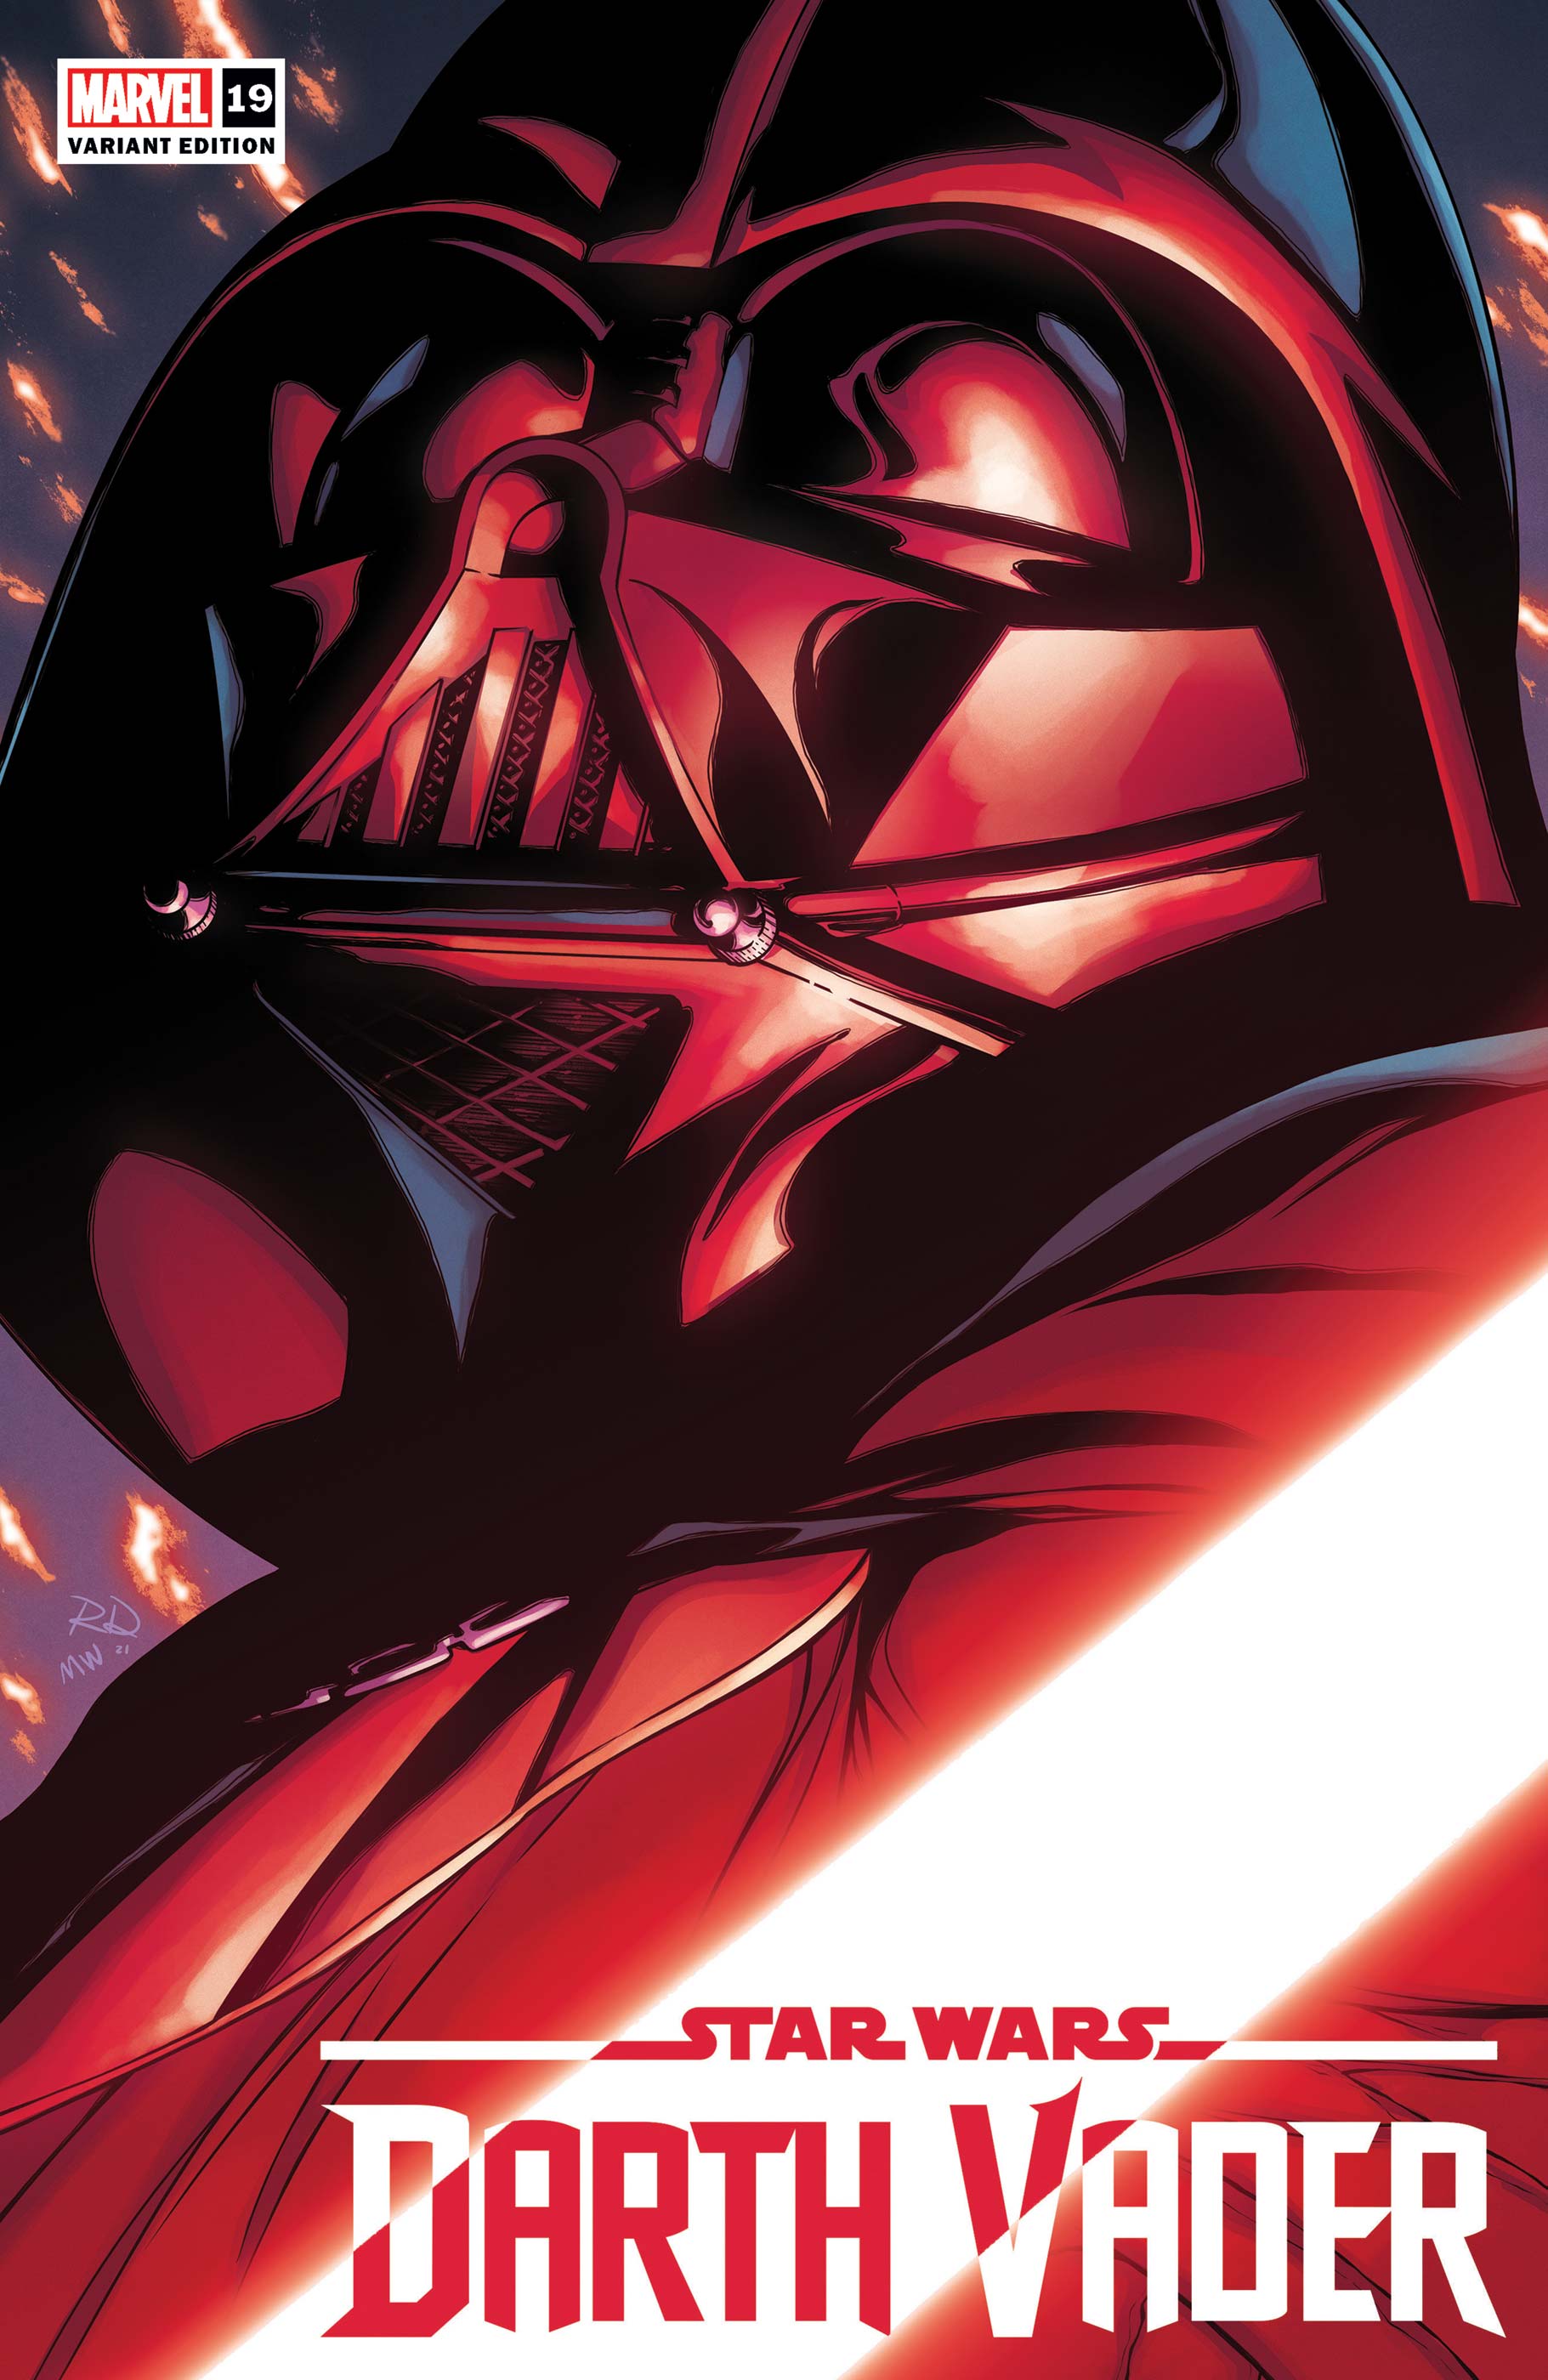 Star Wars: Darth Vader (2020) #19 (Variant)